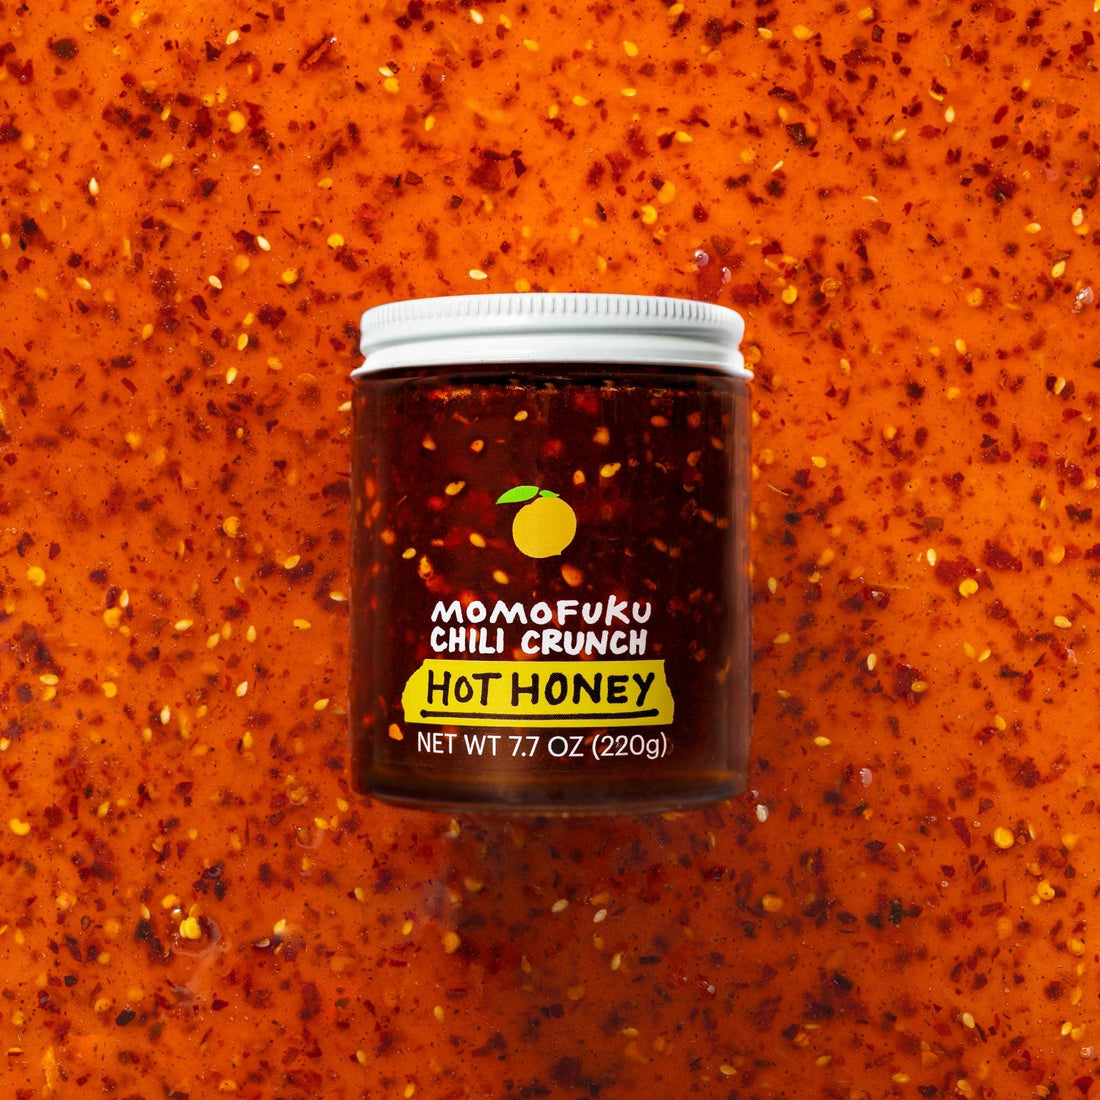 Momofuku Chili Crunch Hot Honey